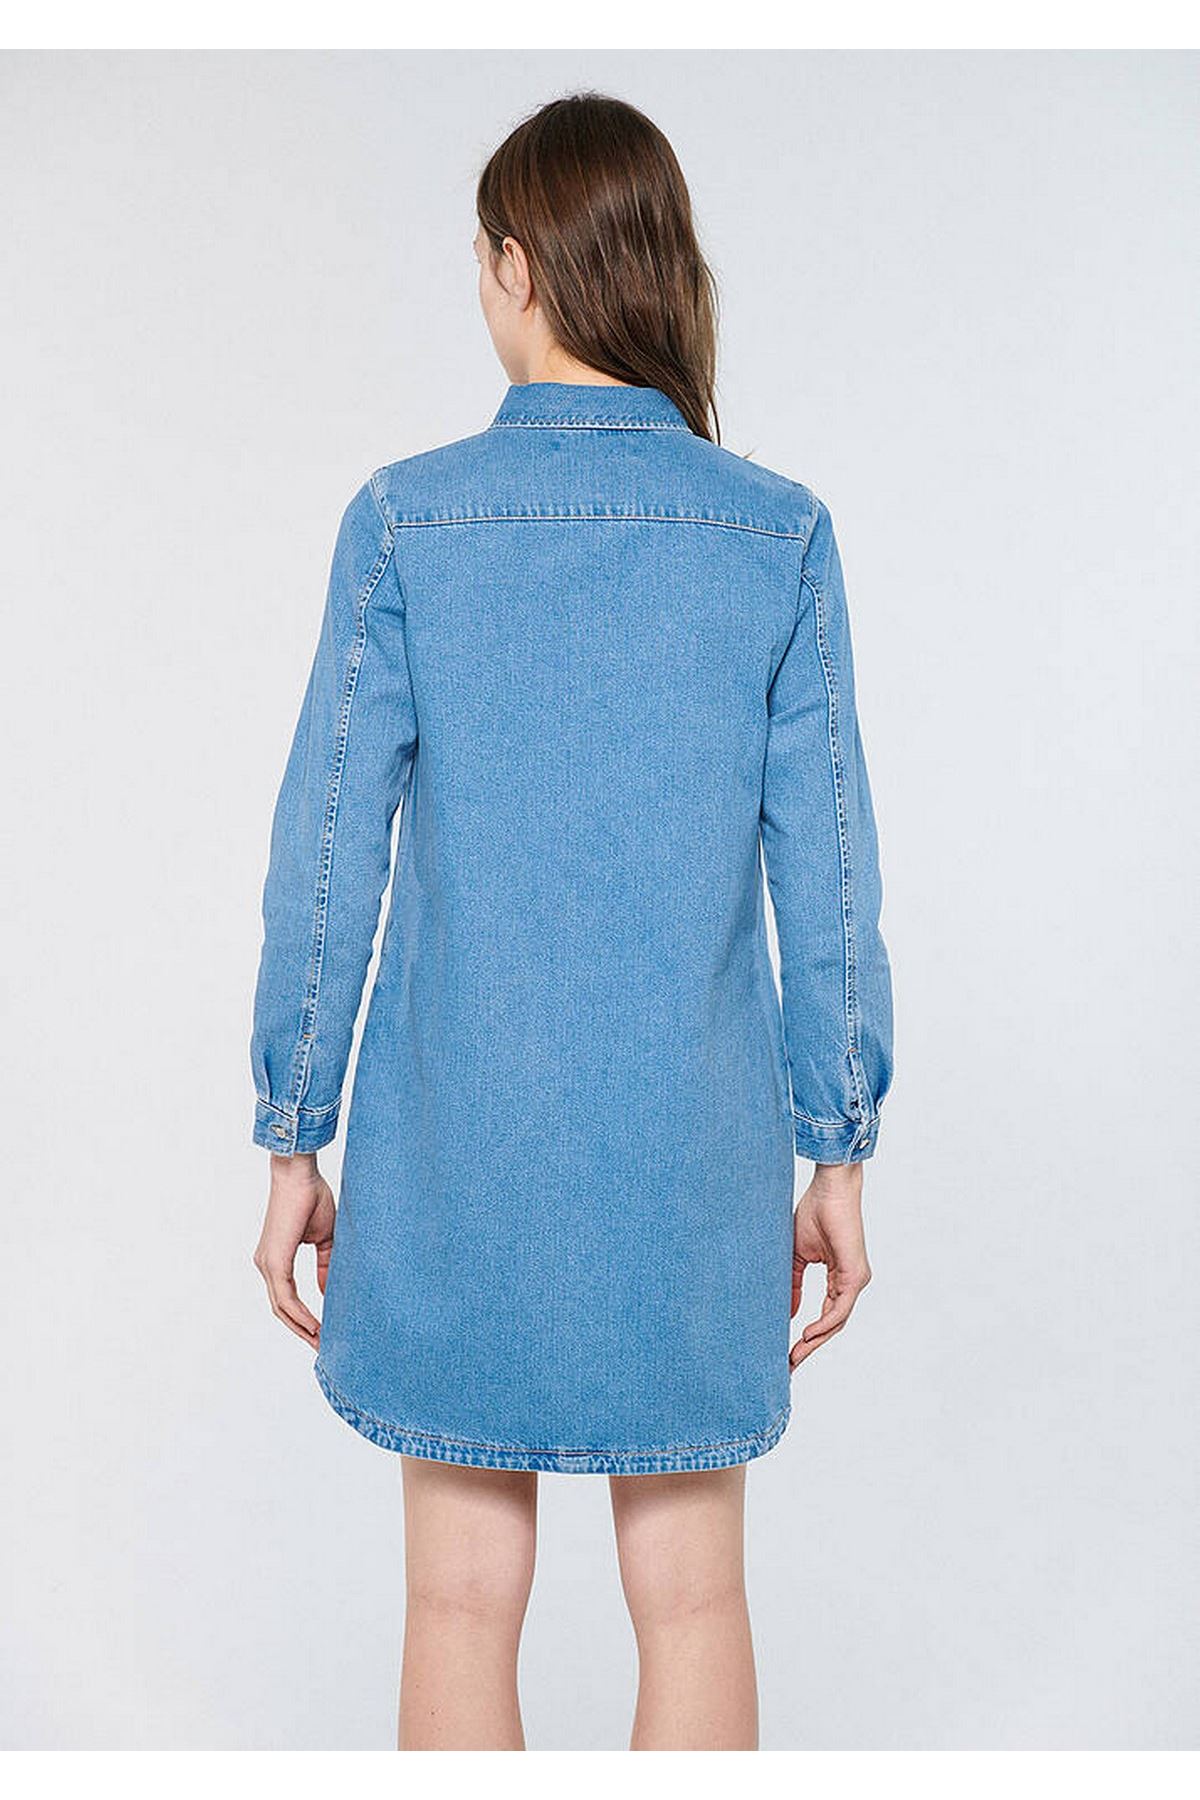 Lız Mavi Kadın Mavi Elbise - M130656-82250